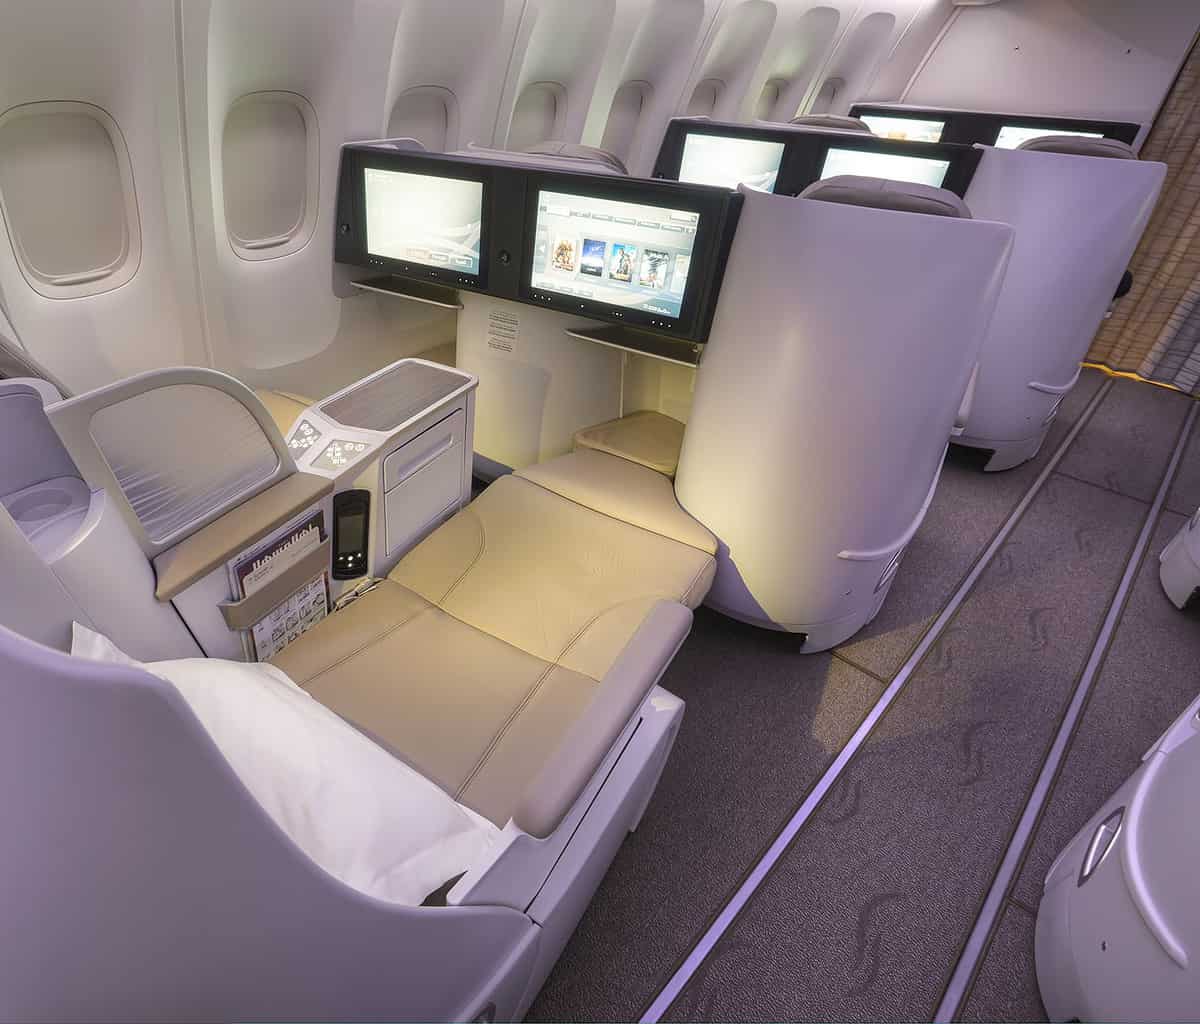 Бизнес класс иванов. First class s7. Saudia 787 Business class. Бизнес класс s7 Airlines. Кабина бизнес s7.